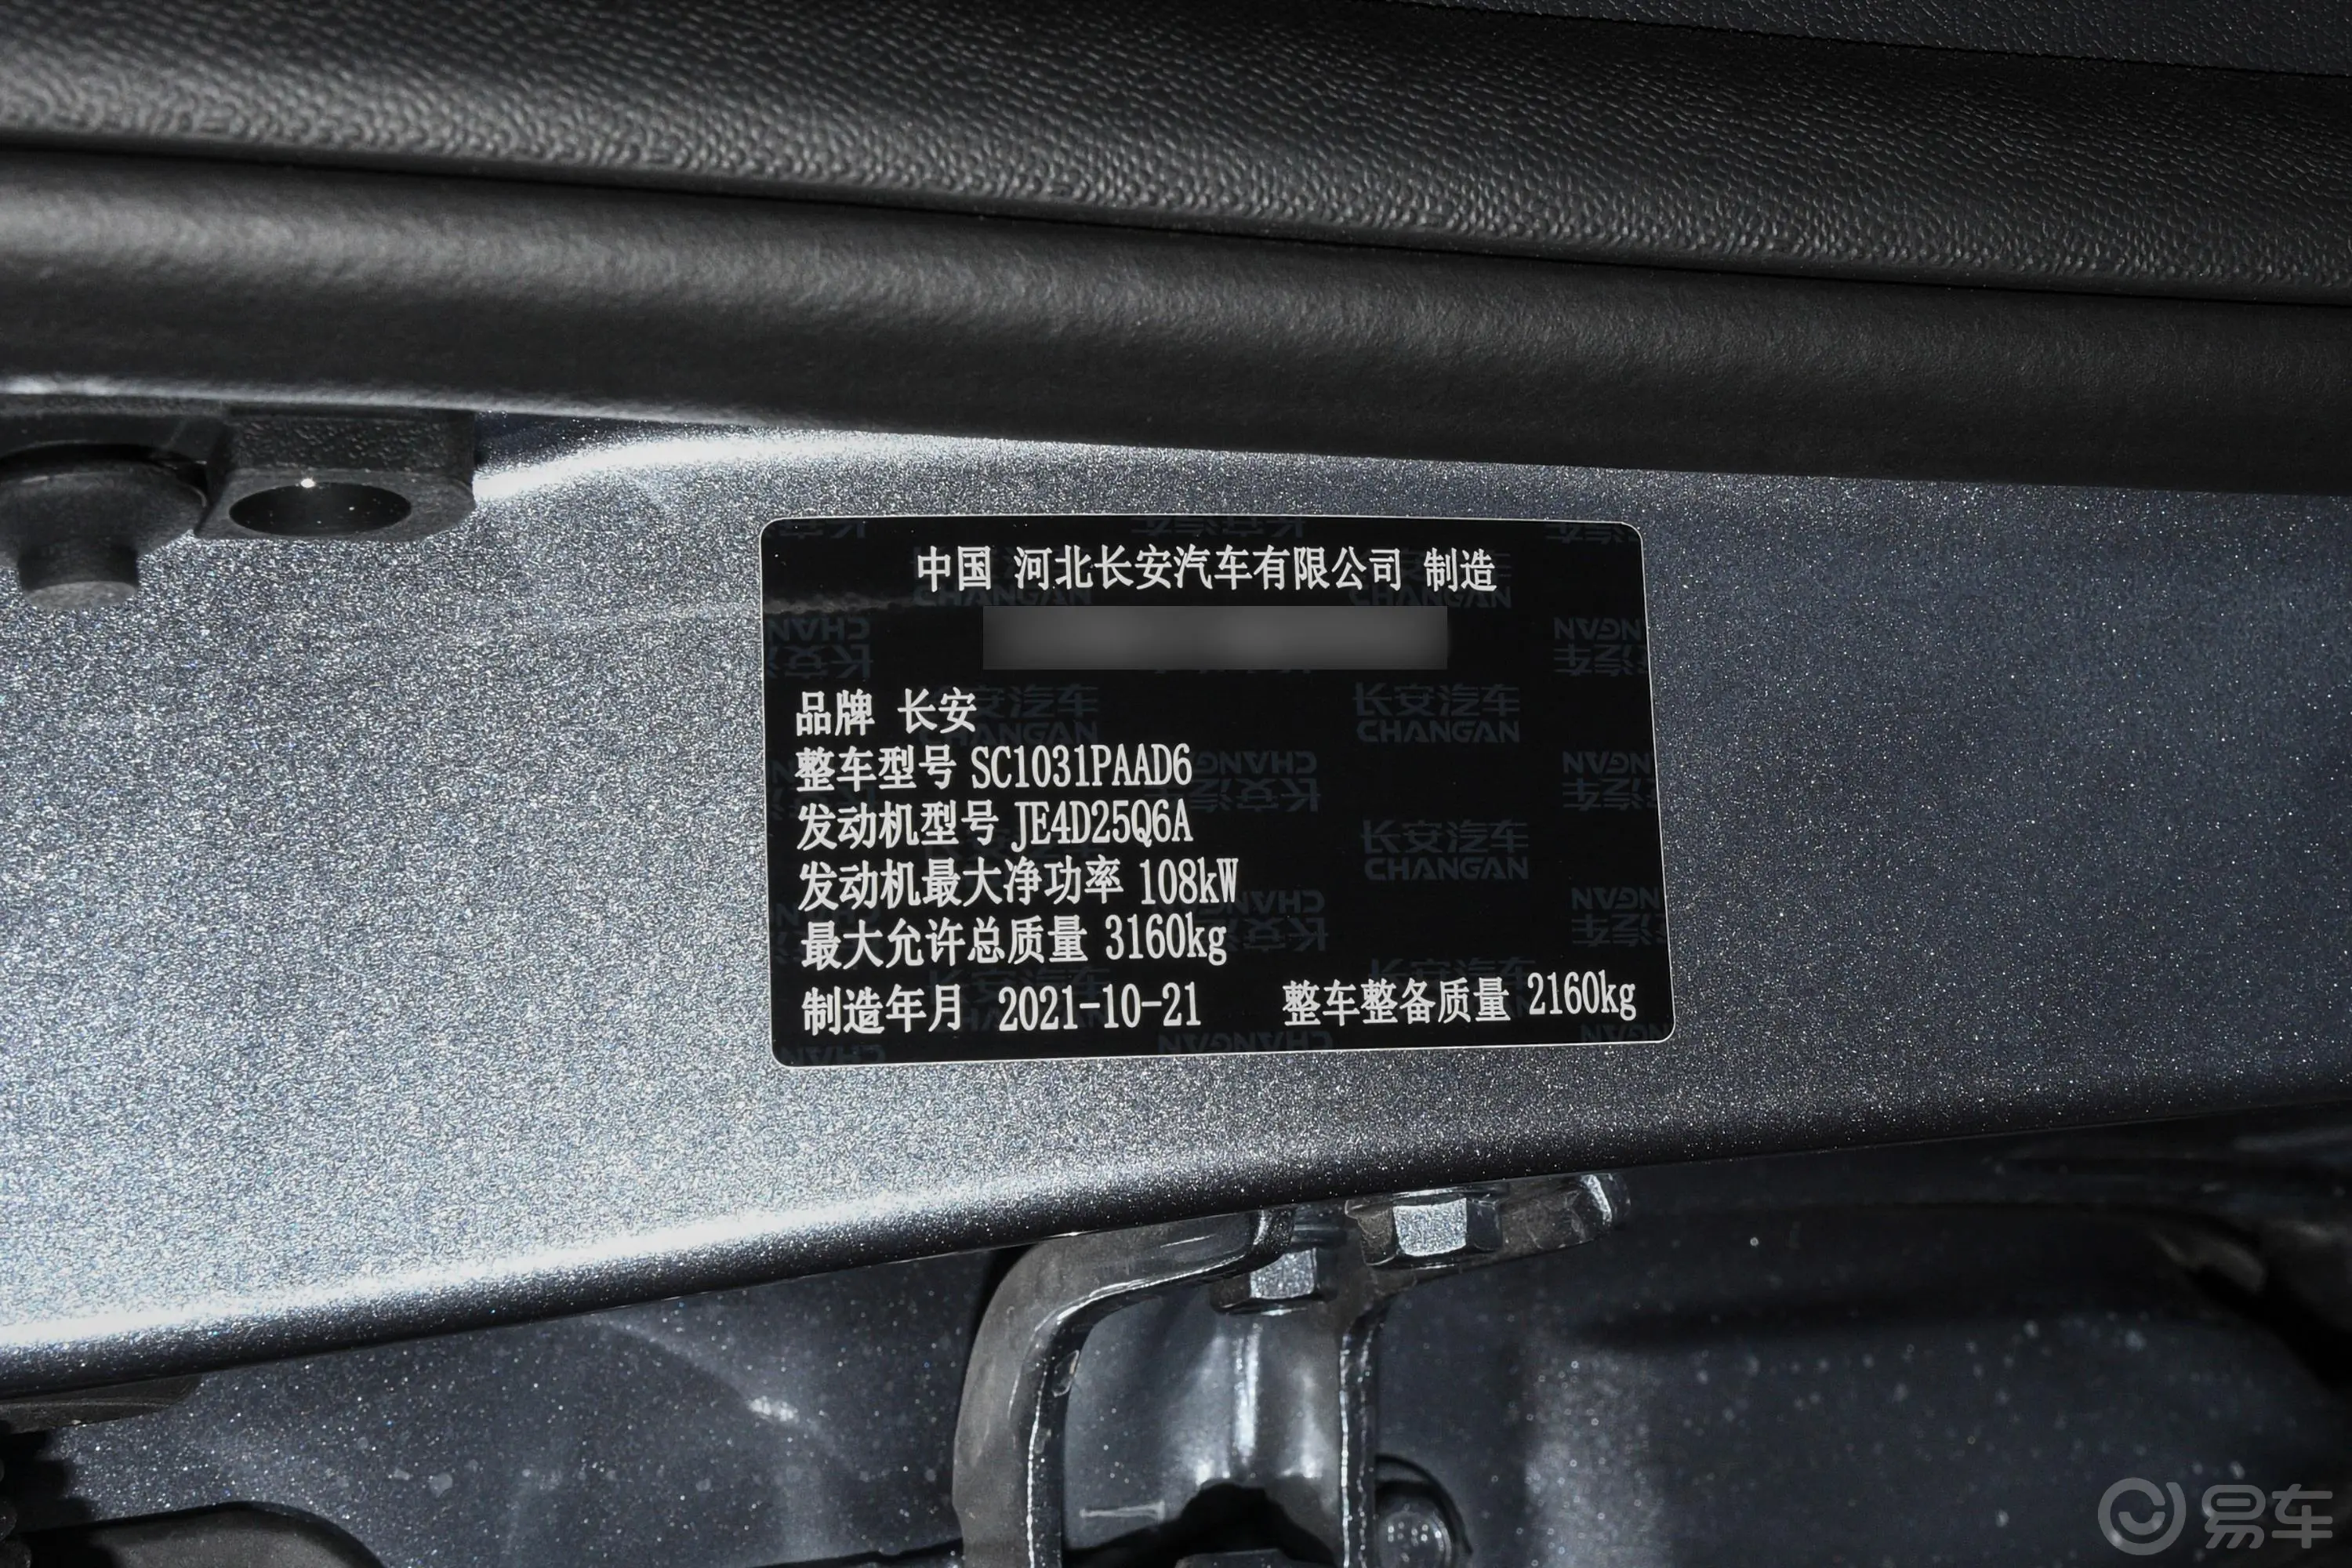 凯程F702.5T 手动 四驱 长轴 卓越版 柴油车辆信息铭牌